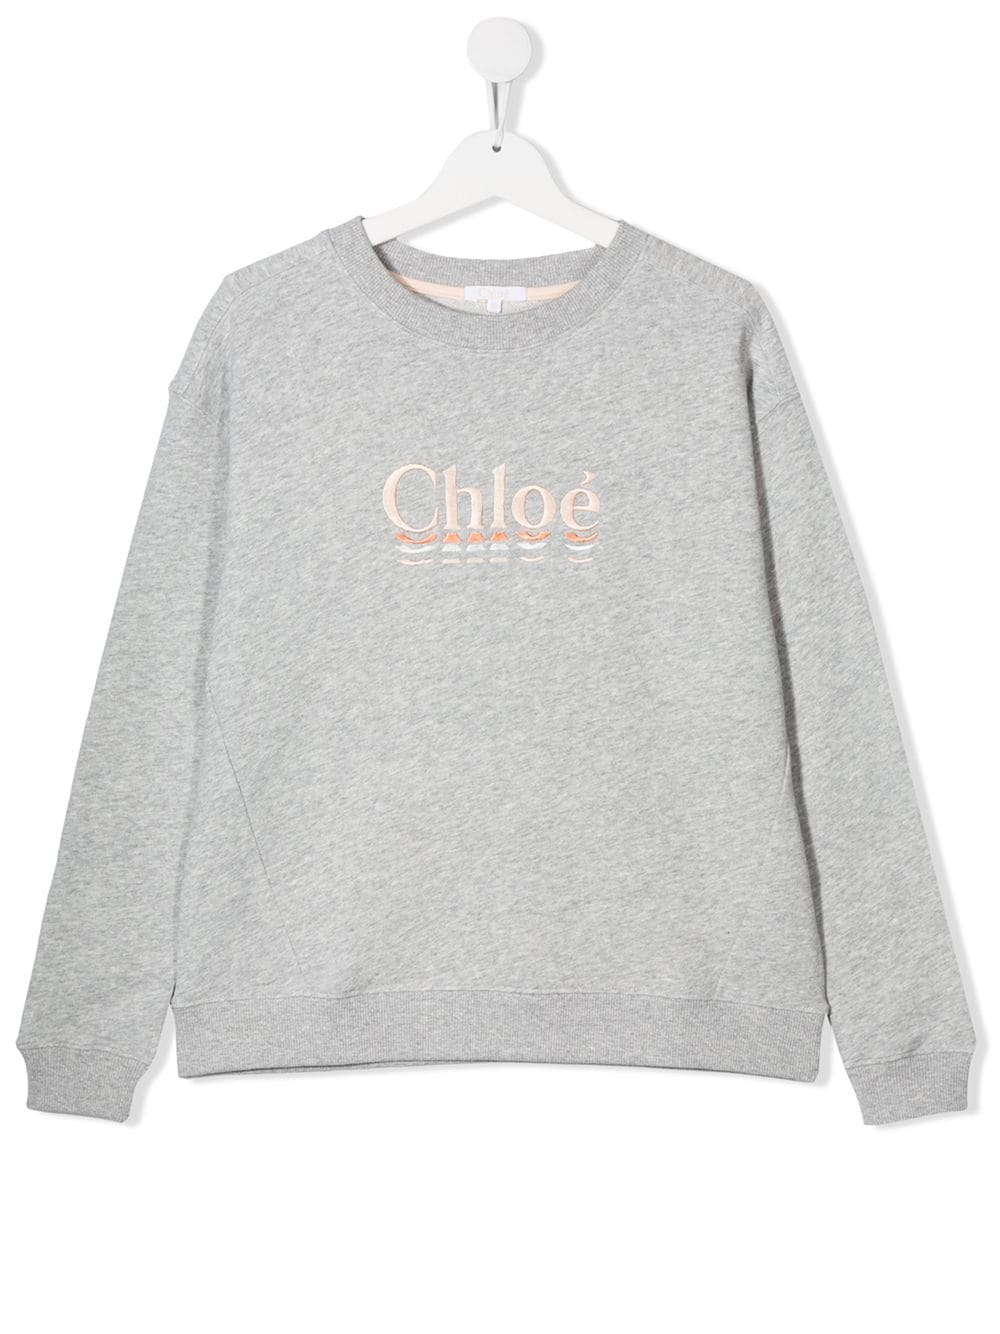 Chloé Kids TEEN embroidered logo crew neck sweatshirt - Grey von Chloé Kids